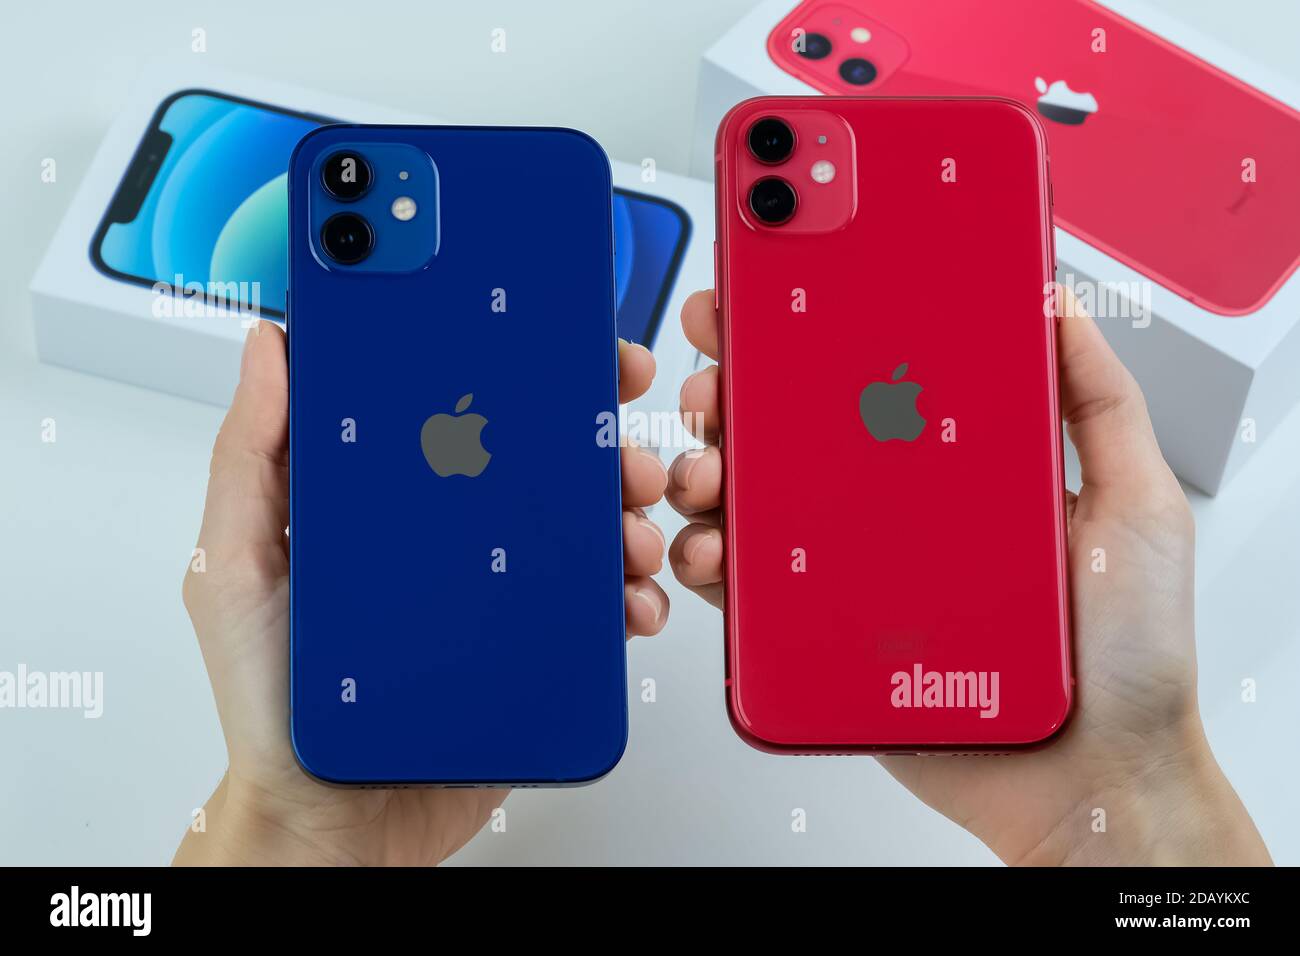 Iphone 11 rosso immagini e fotografie stock ad alta risoluzione - Alamy